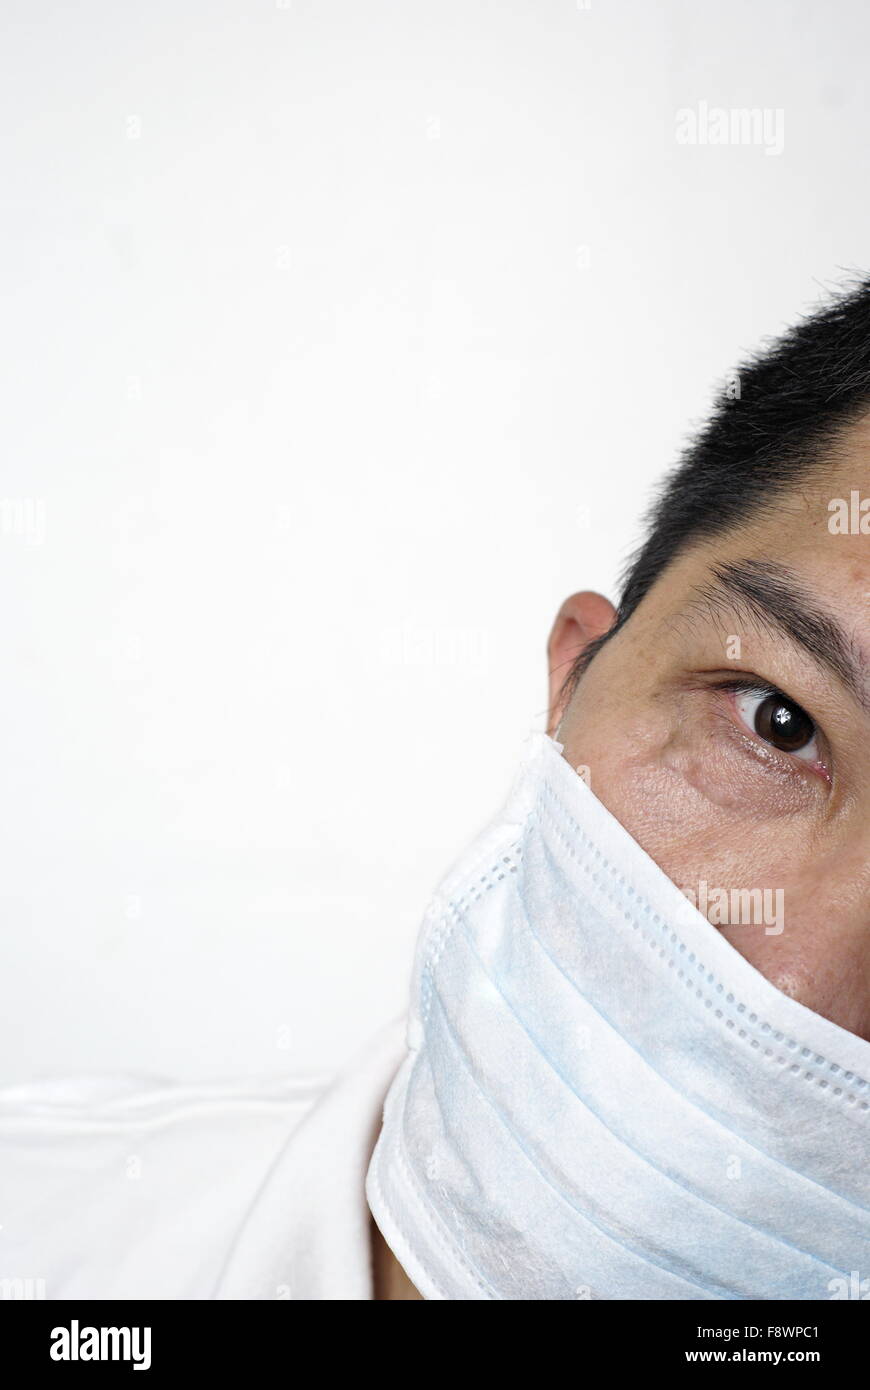 Asian man in medical portrait masque cachant une partie de son visage, copyspace Banque D'Images